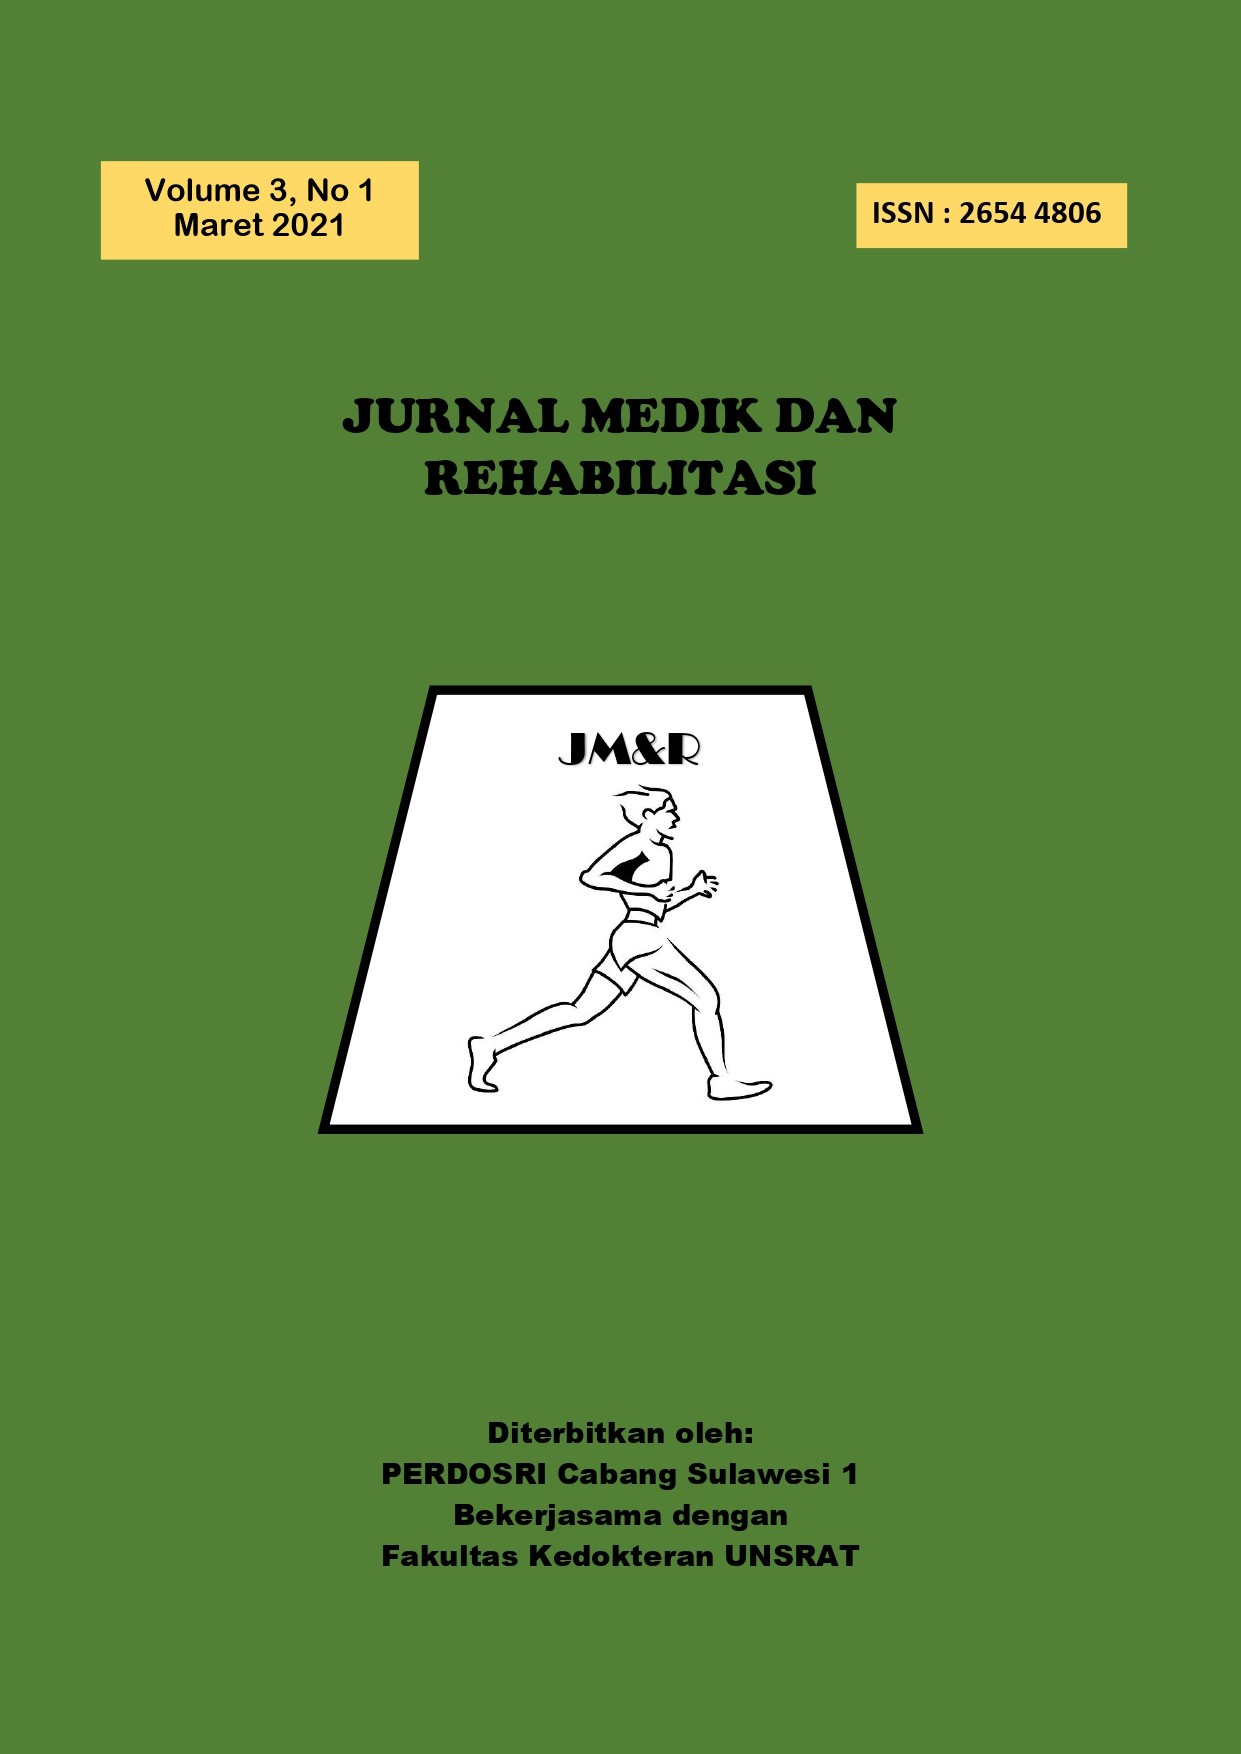 					View Vol. 3 No. 1 (2021): JURNAL MEDIK DAN REHABILITASI (JMR) VOLUME 3 NOMOR 1, MARET 2021
				